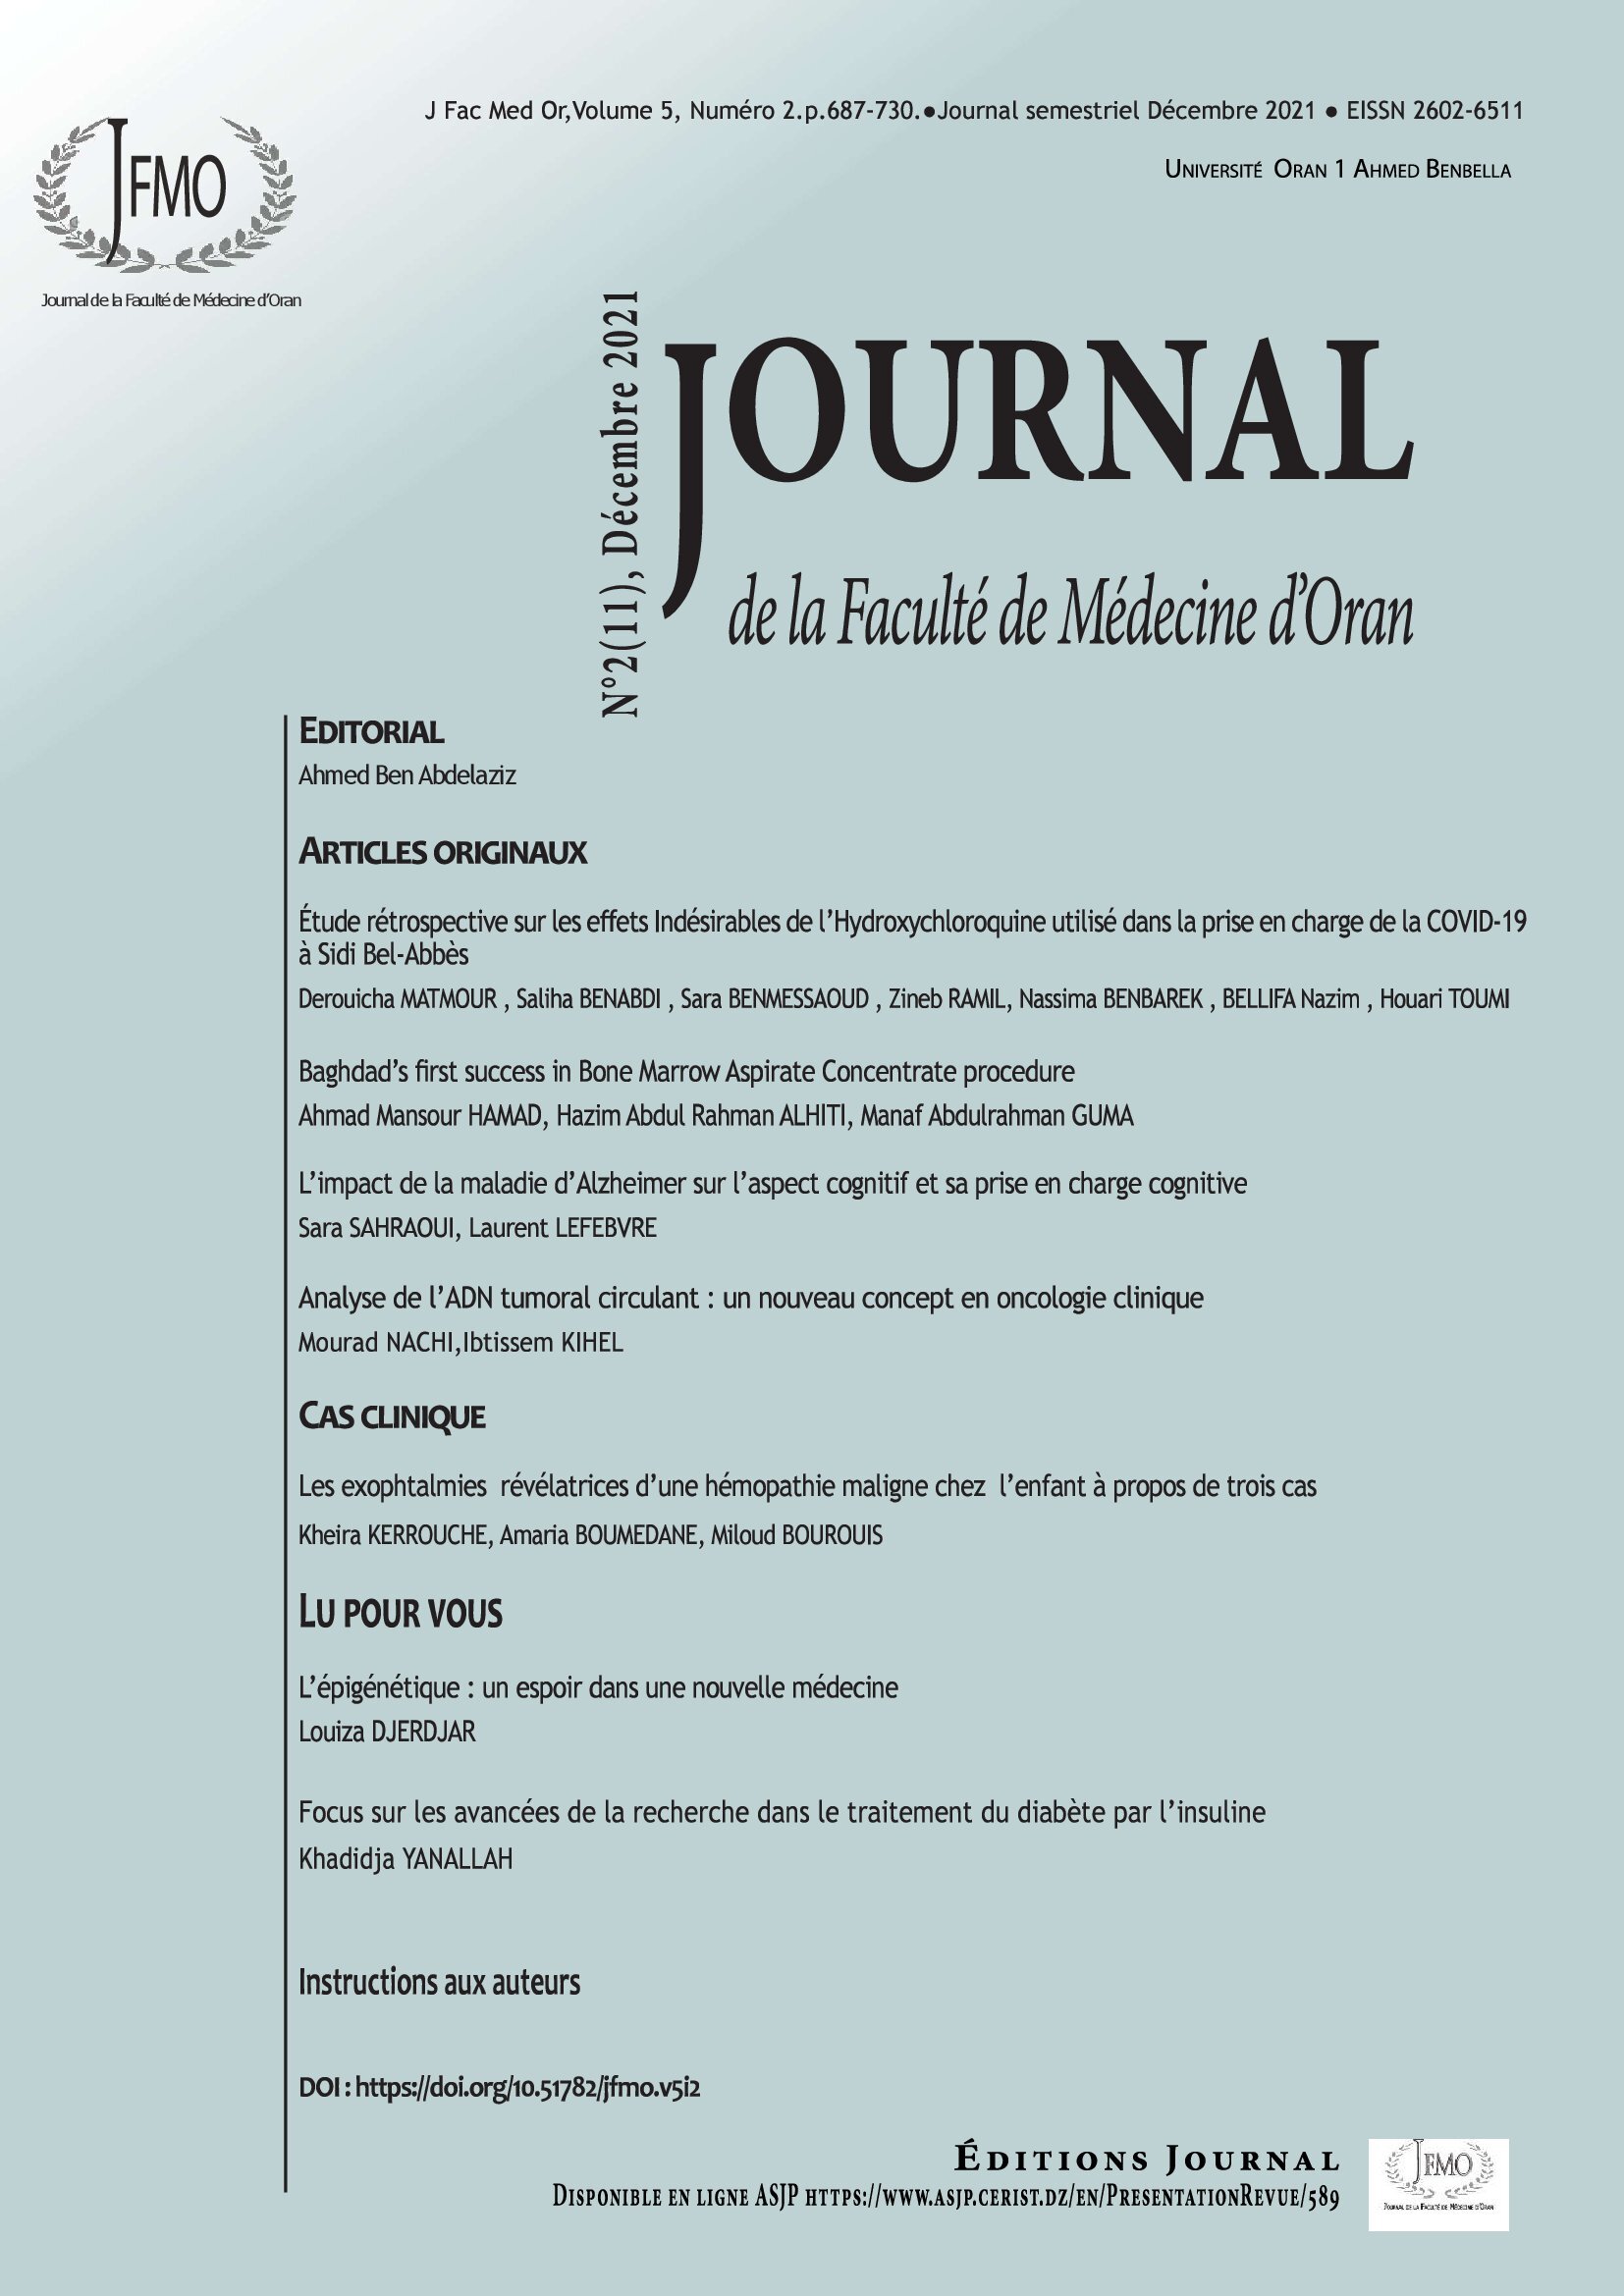 Le Journal de La Faculté De Médecine d'Oran (JFMO) Volume 05 / Number 02 / Published on December 2021.